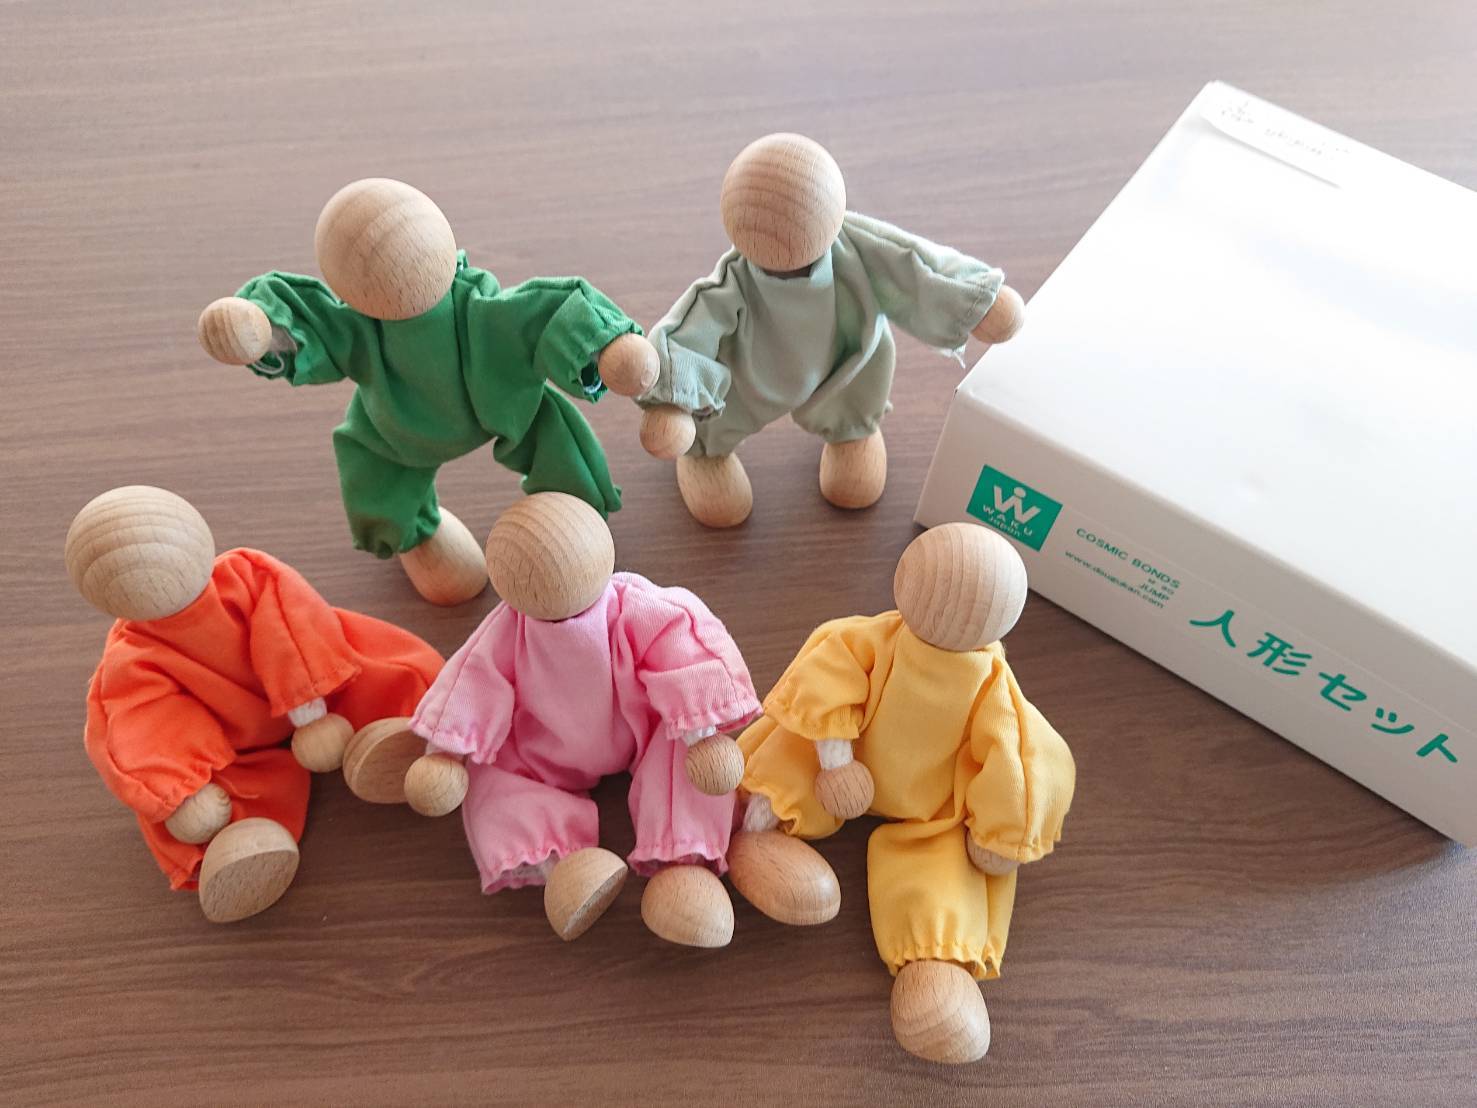 人形セット 童具館 積木 積み木 木のおもちゃ 知育玩具 wakubulock